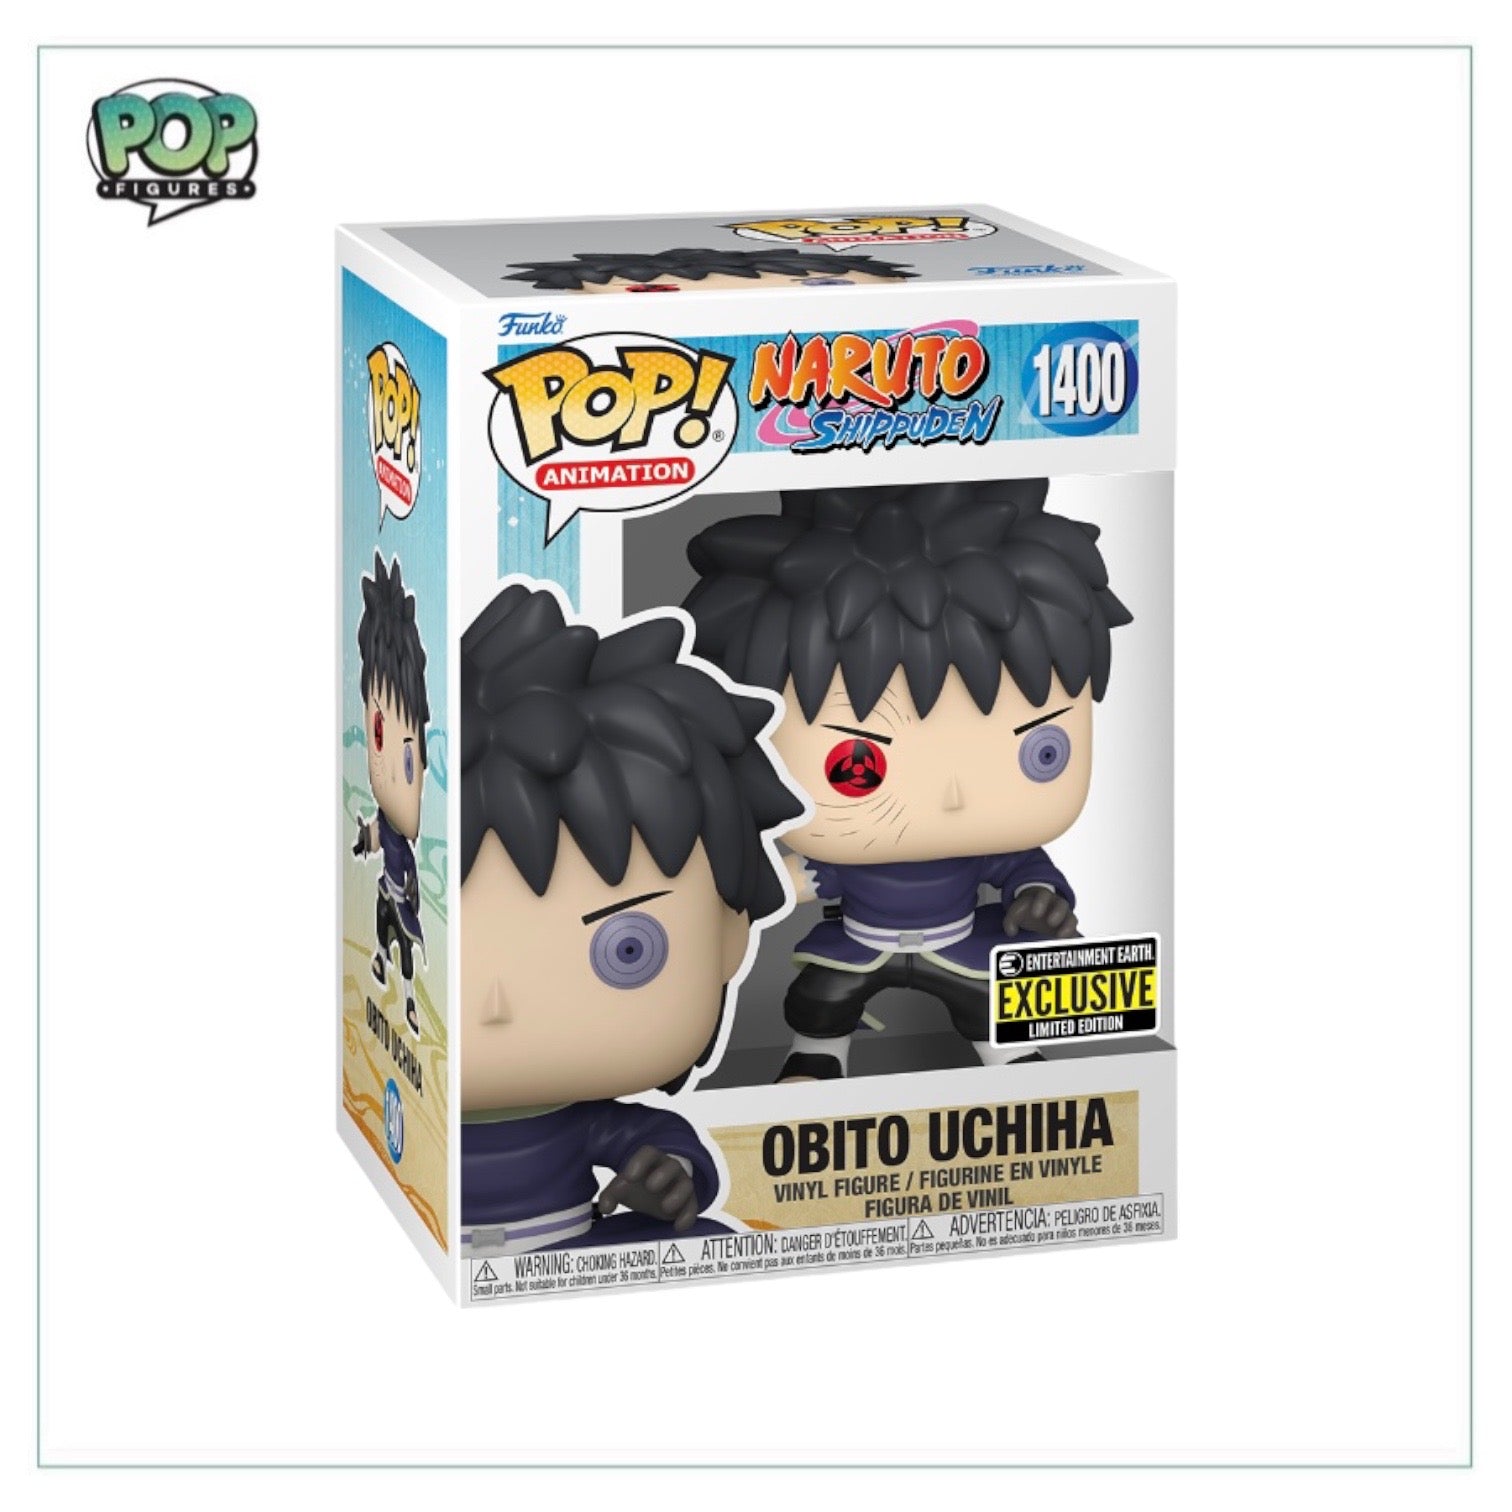 Obito Uchiha #1400 Funko Pop! - Naruto Shippuden - Entertainment Earth Exclusive